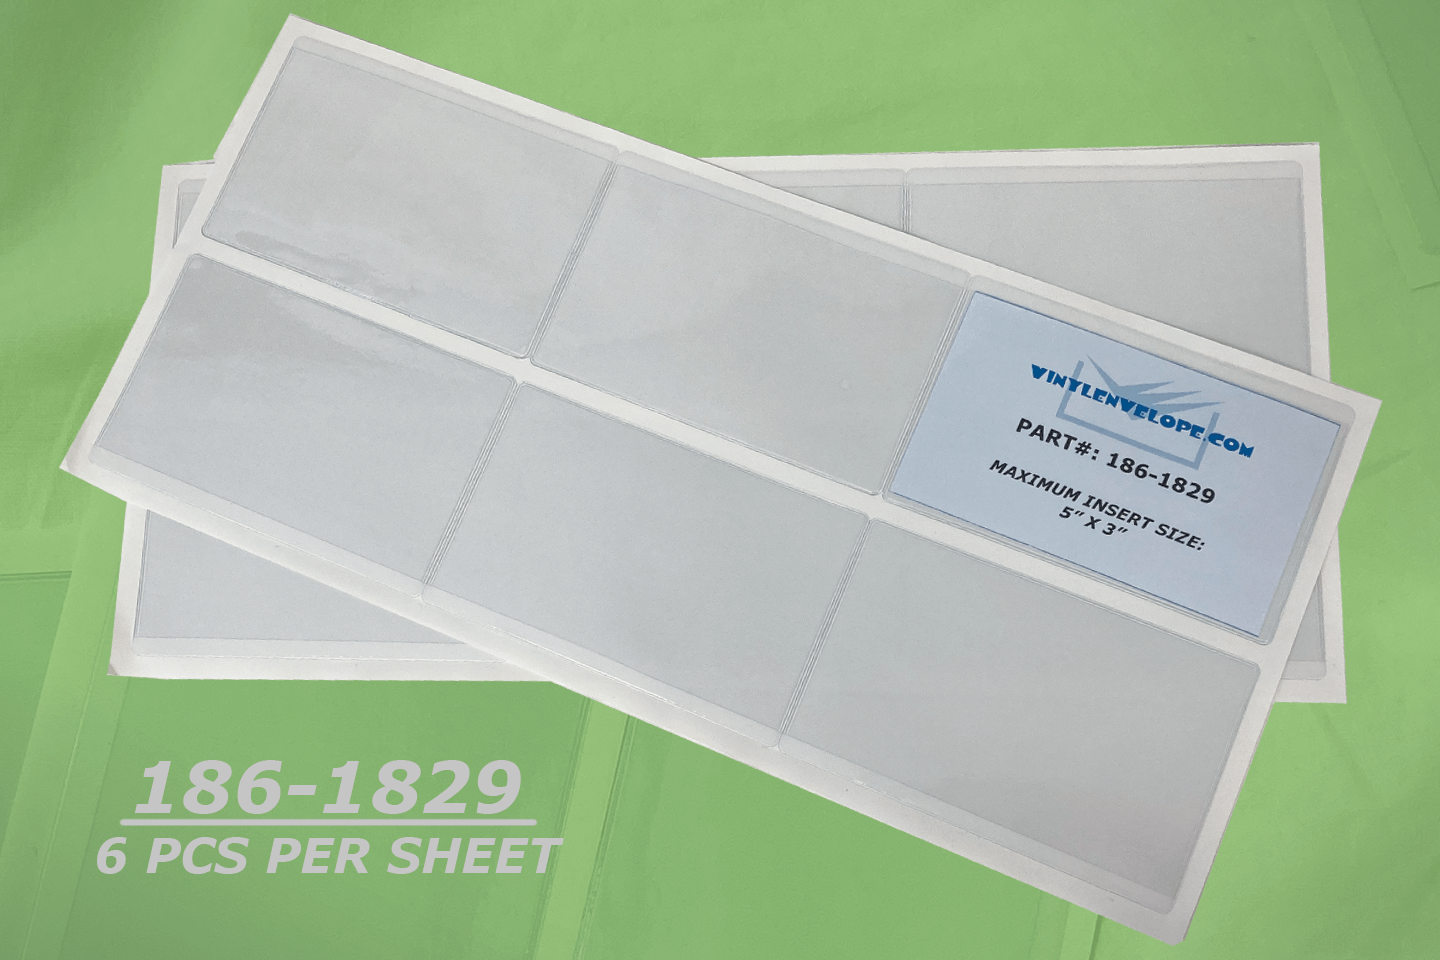 5 1/4 X 3 3/8" Adhesive vinyl envelope